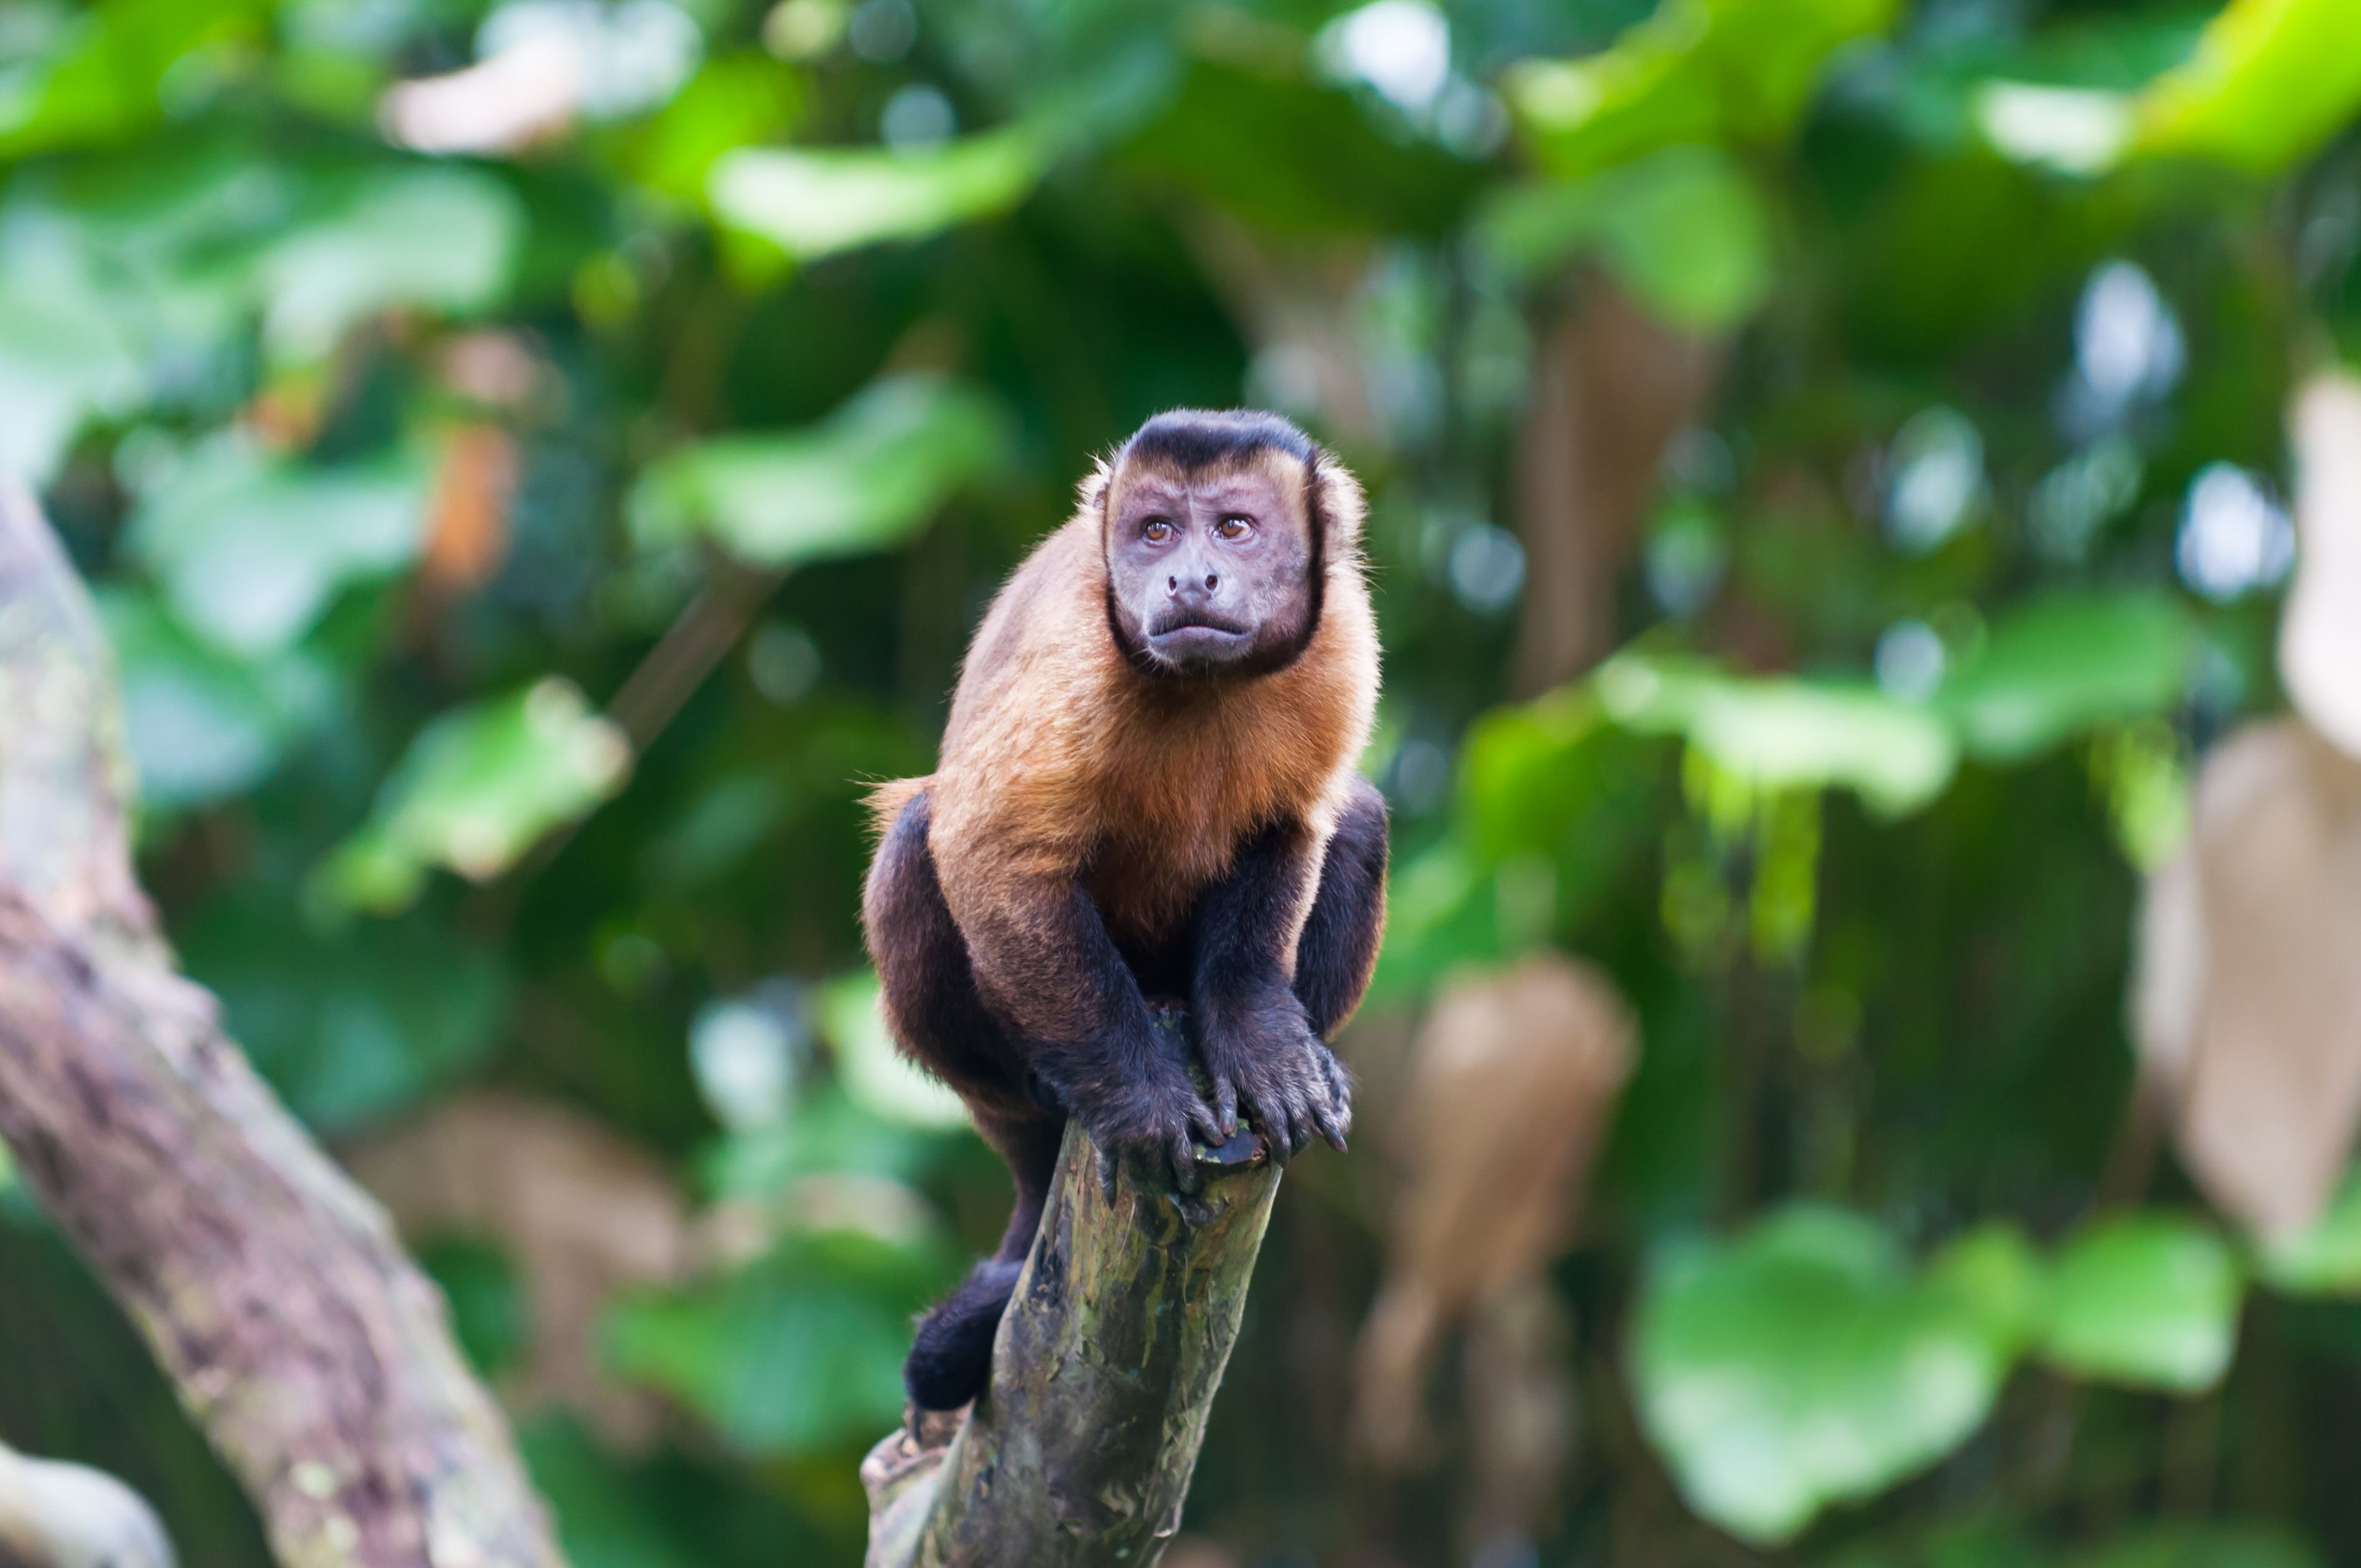 Animais em Extinção na Floresta Amazônica Toda Matéria